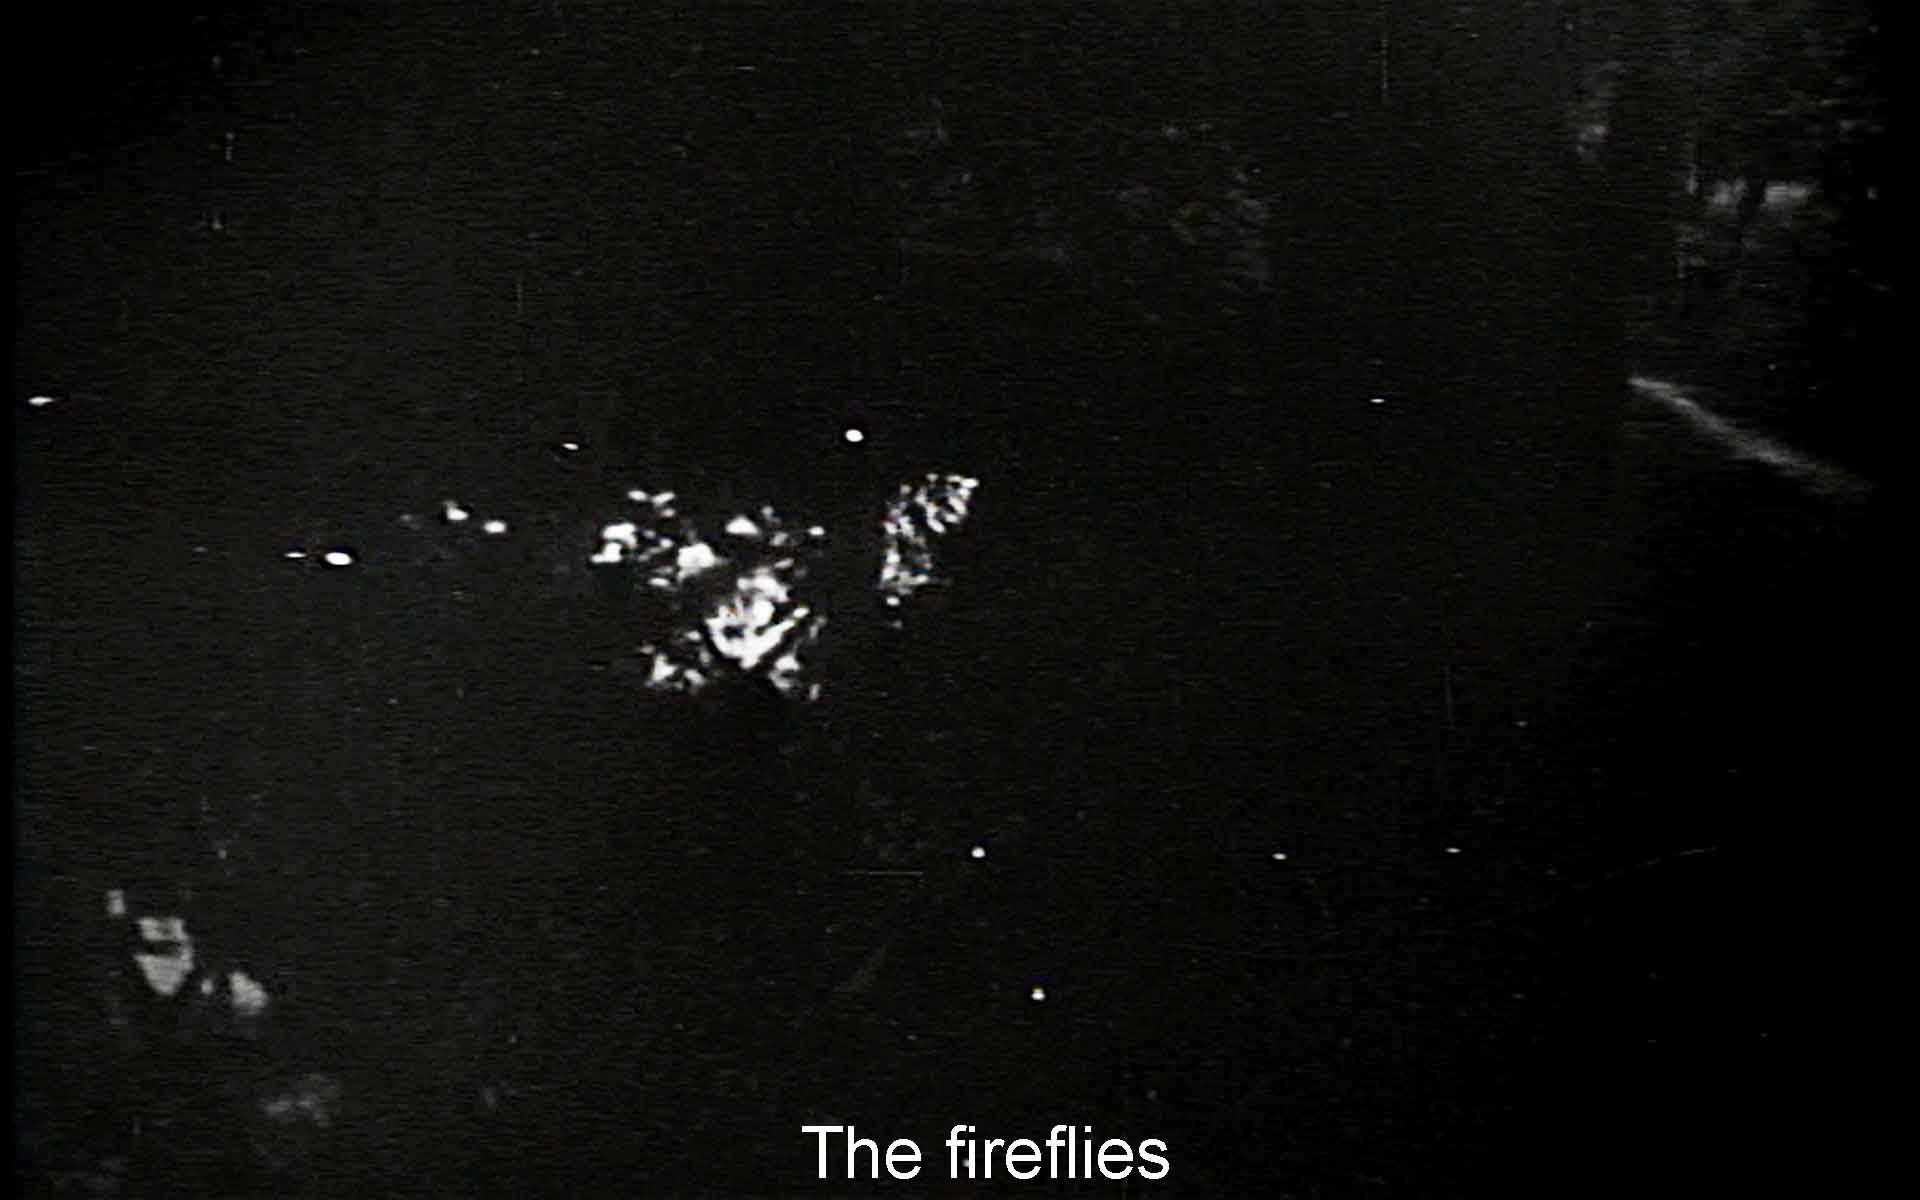 The fireflies